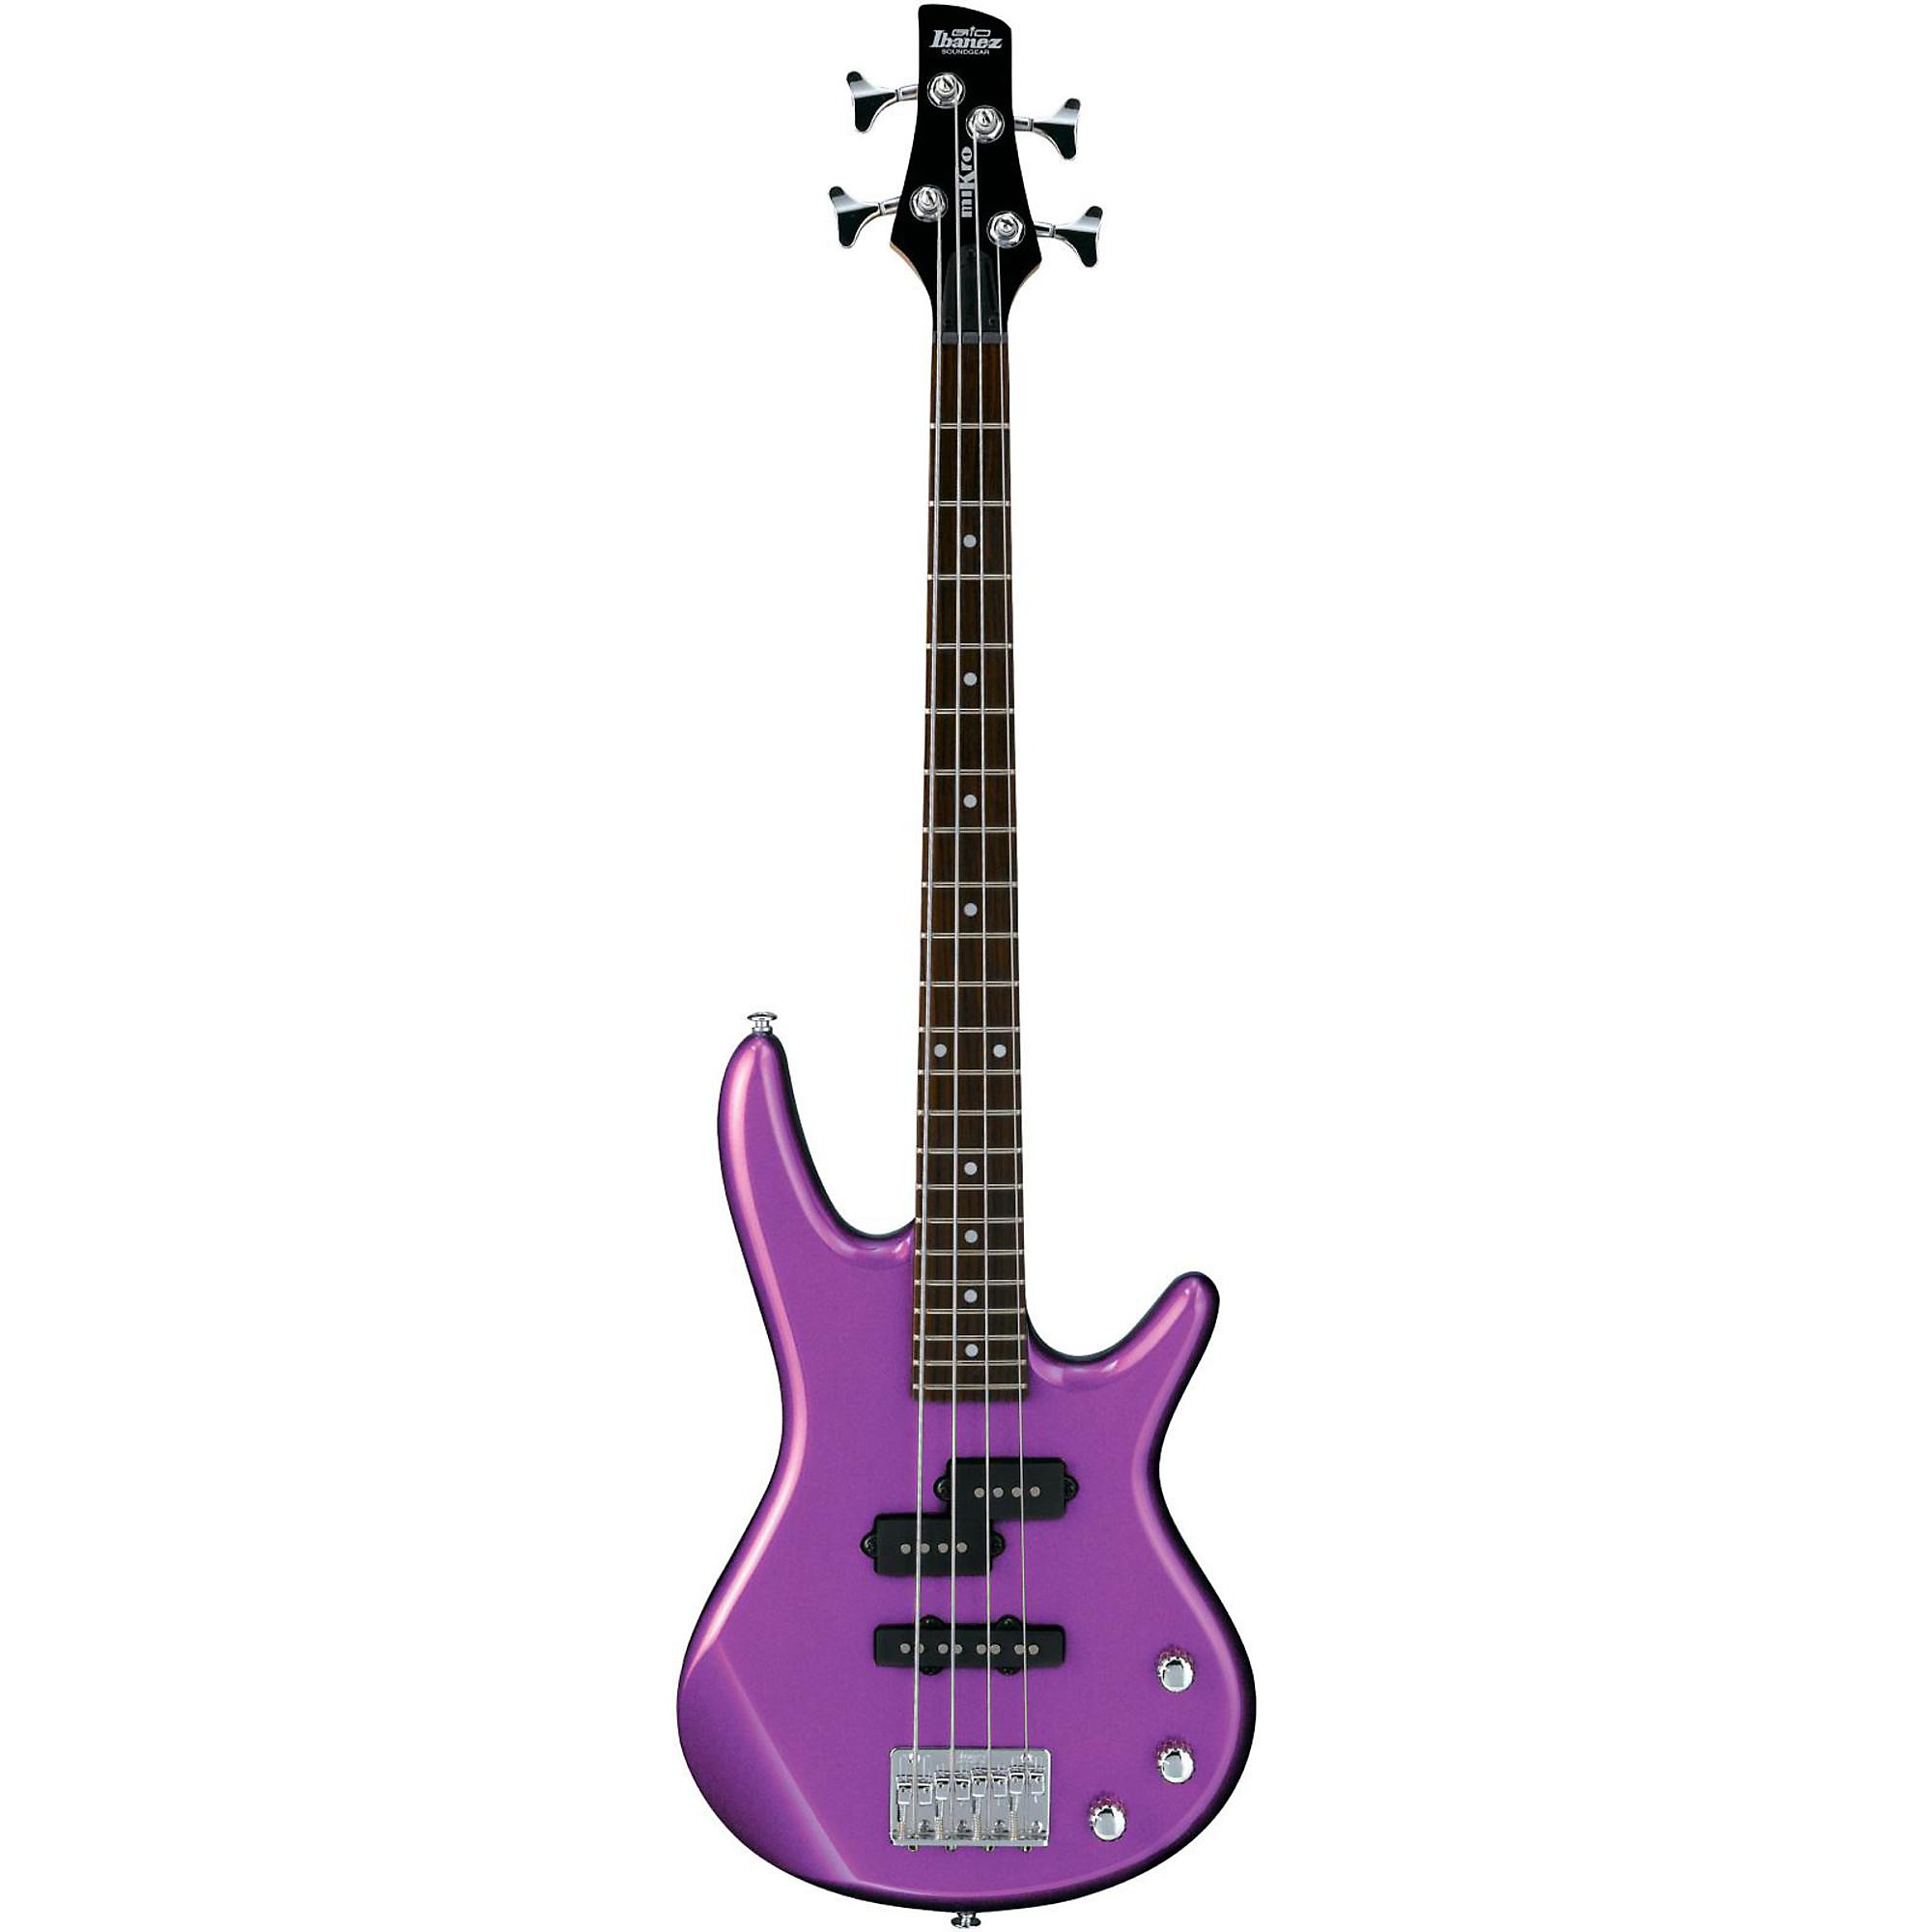 Ibanez GSRM20 miKro Бас-гитара с короткой мензурой, фиолетовый металлик цена и фото